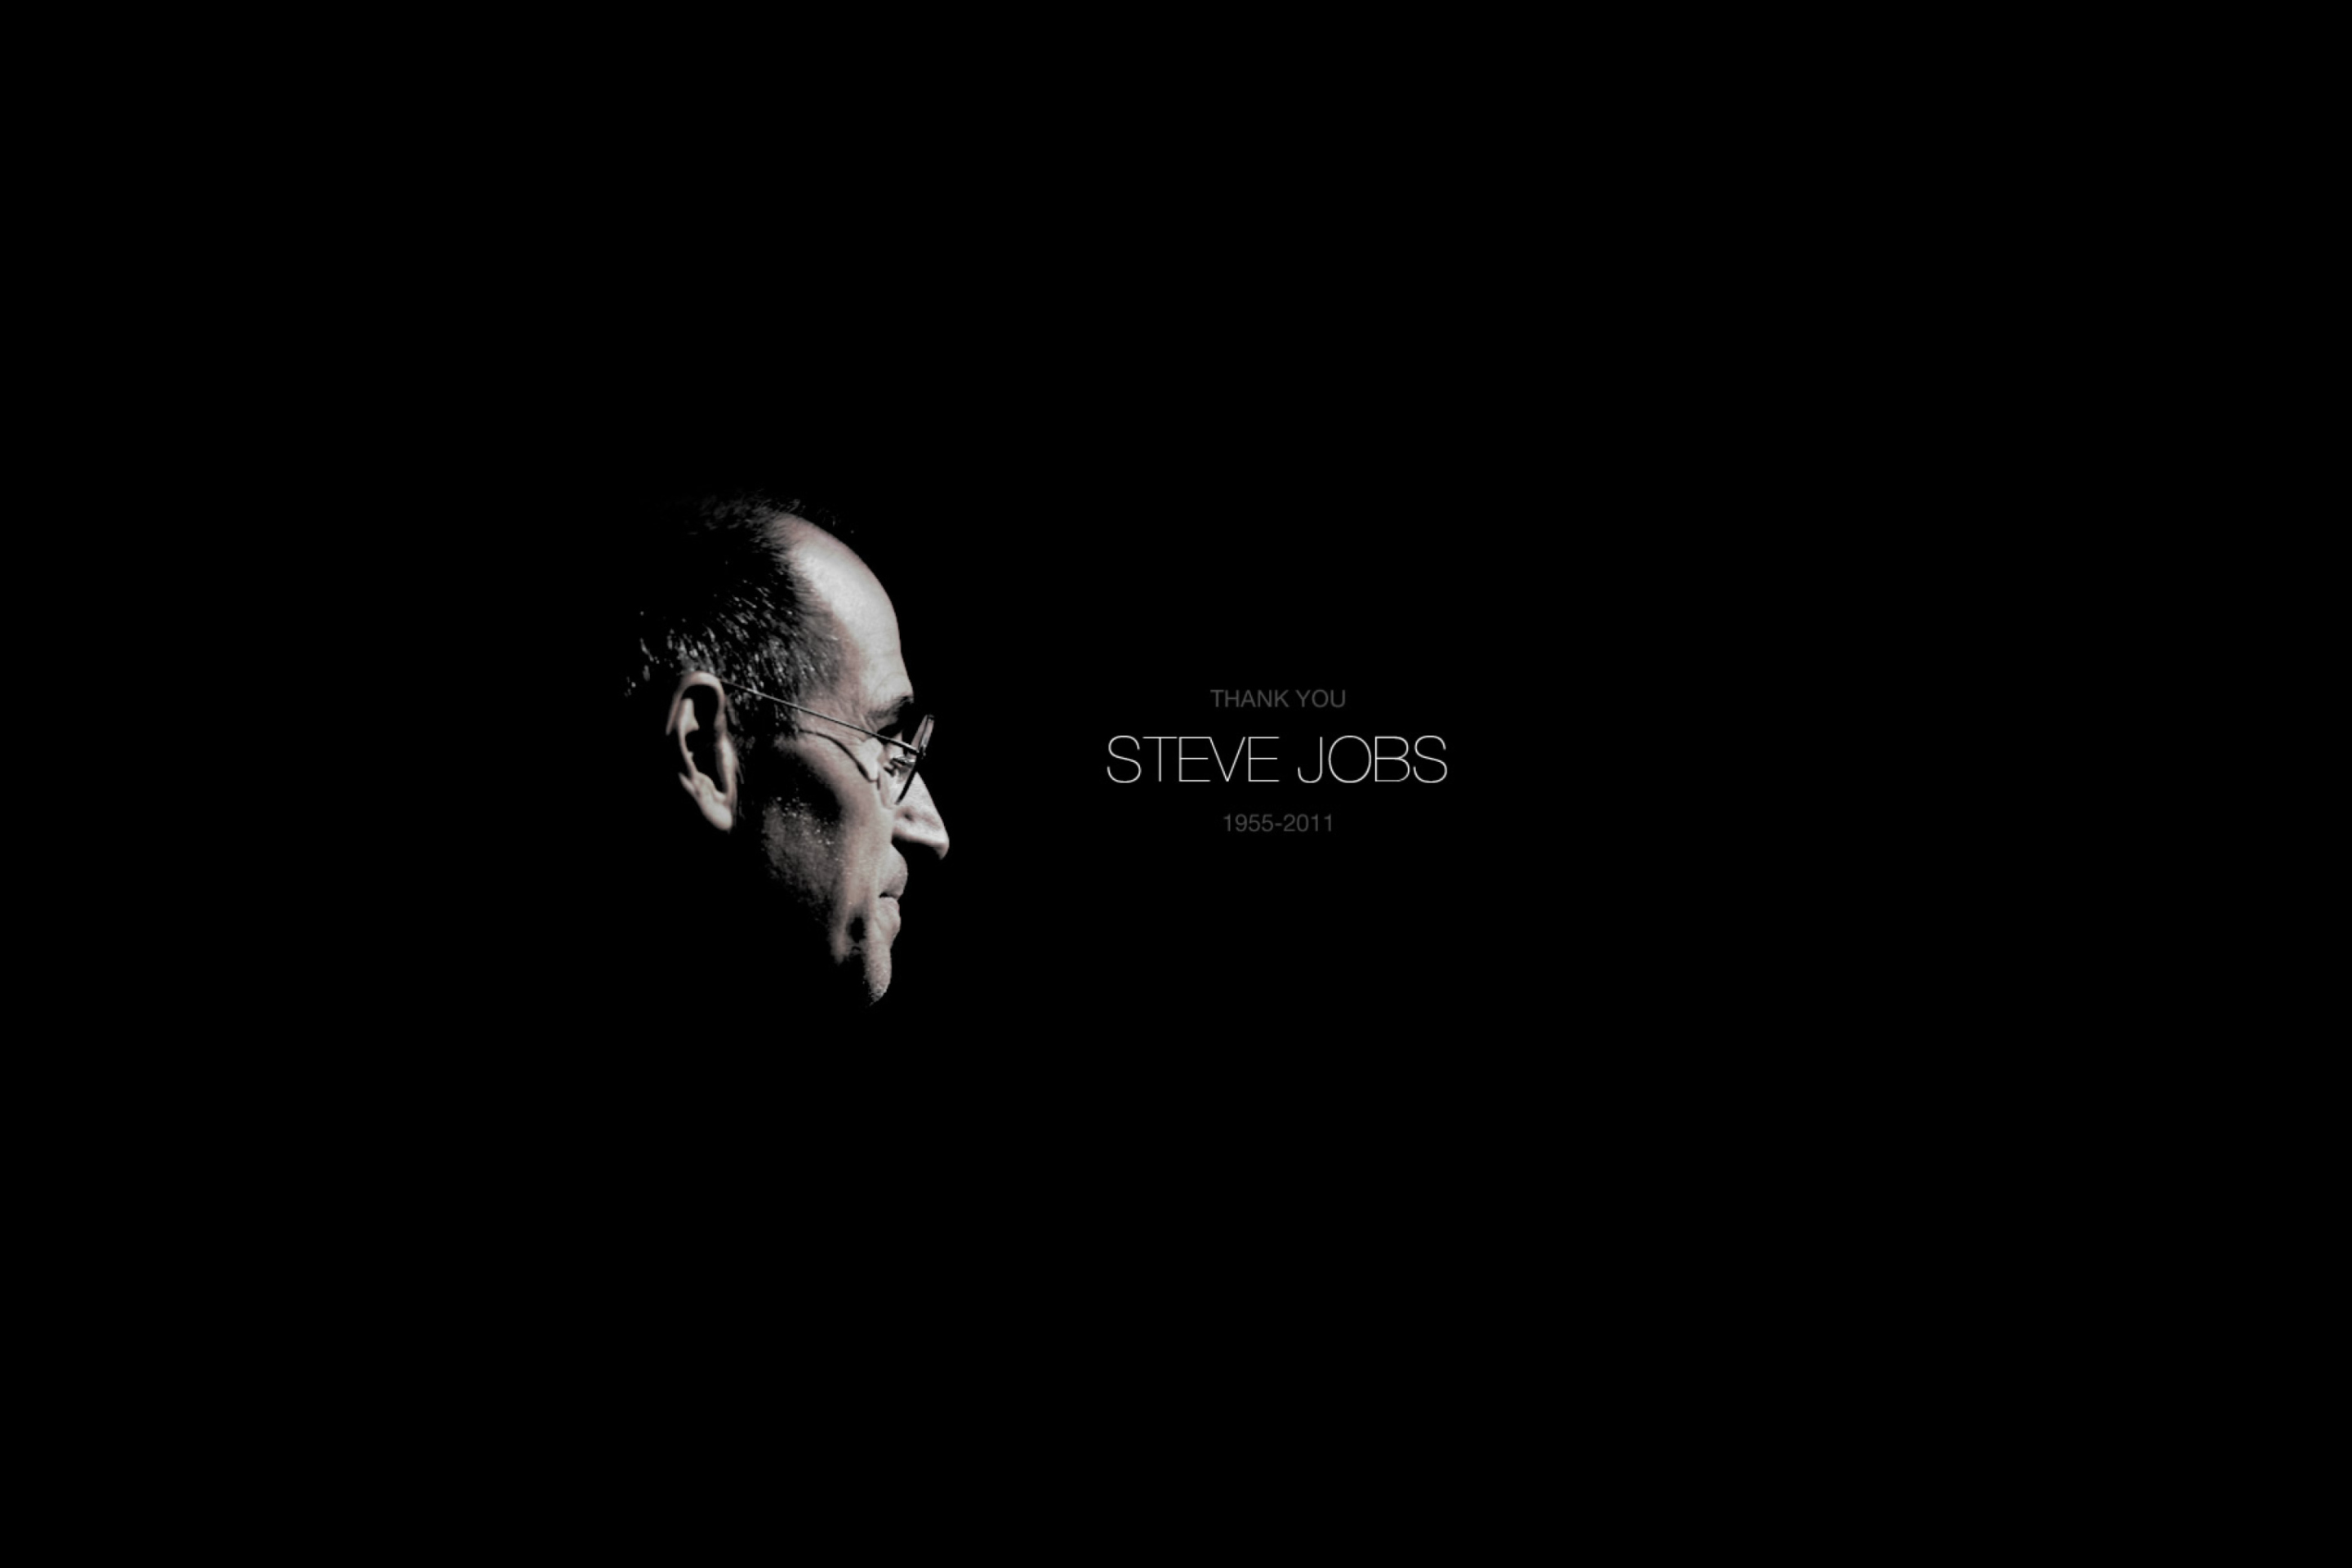 Thank you Steve Jobs wallpaper 2880x1920